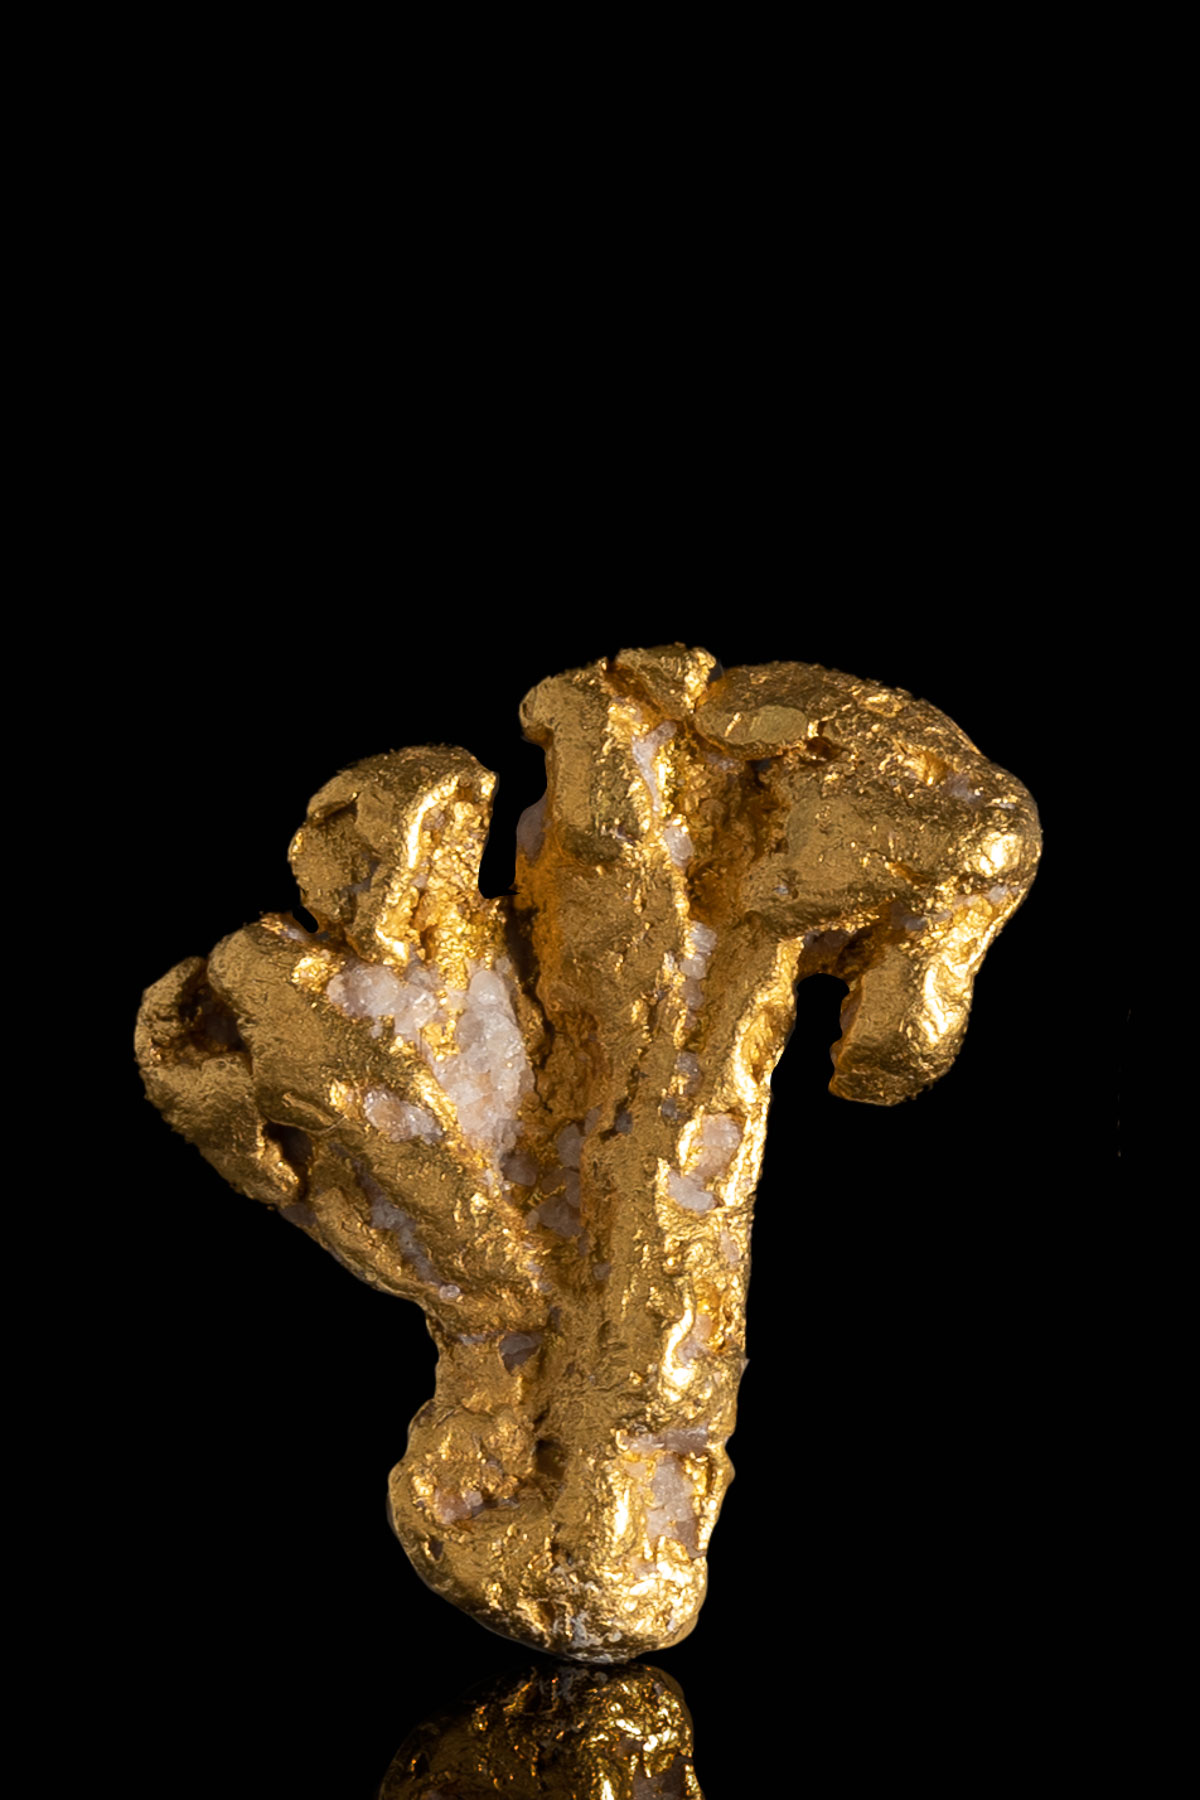 Crooked Cross Alaska Natural Gold Nugget - 3.62 grams